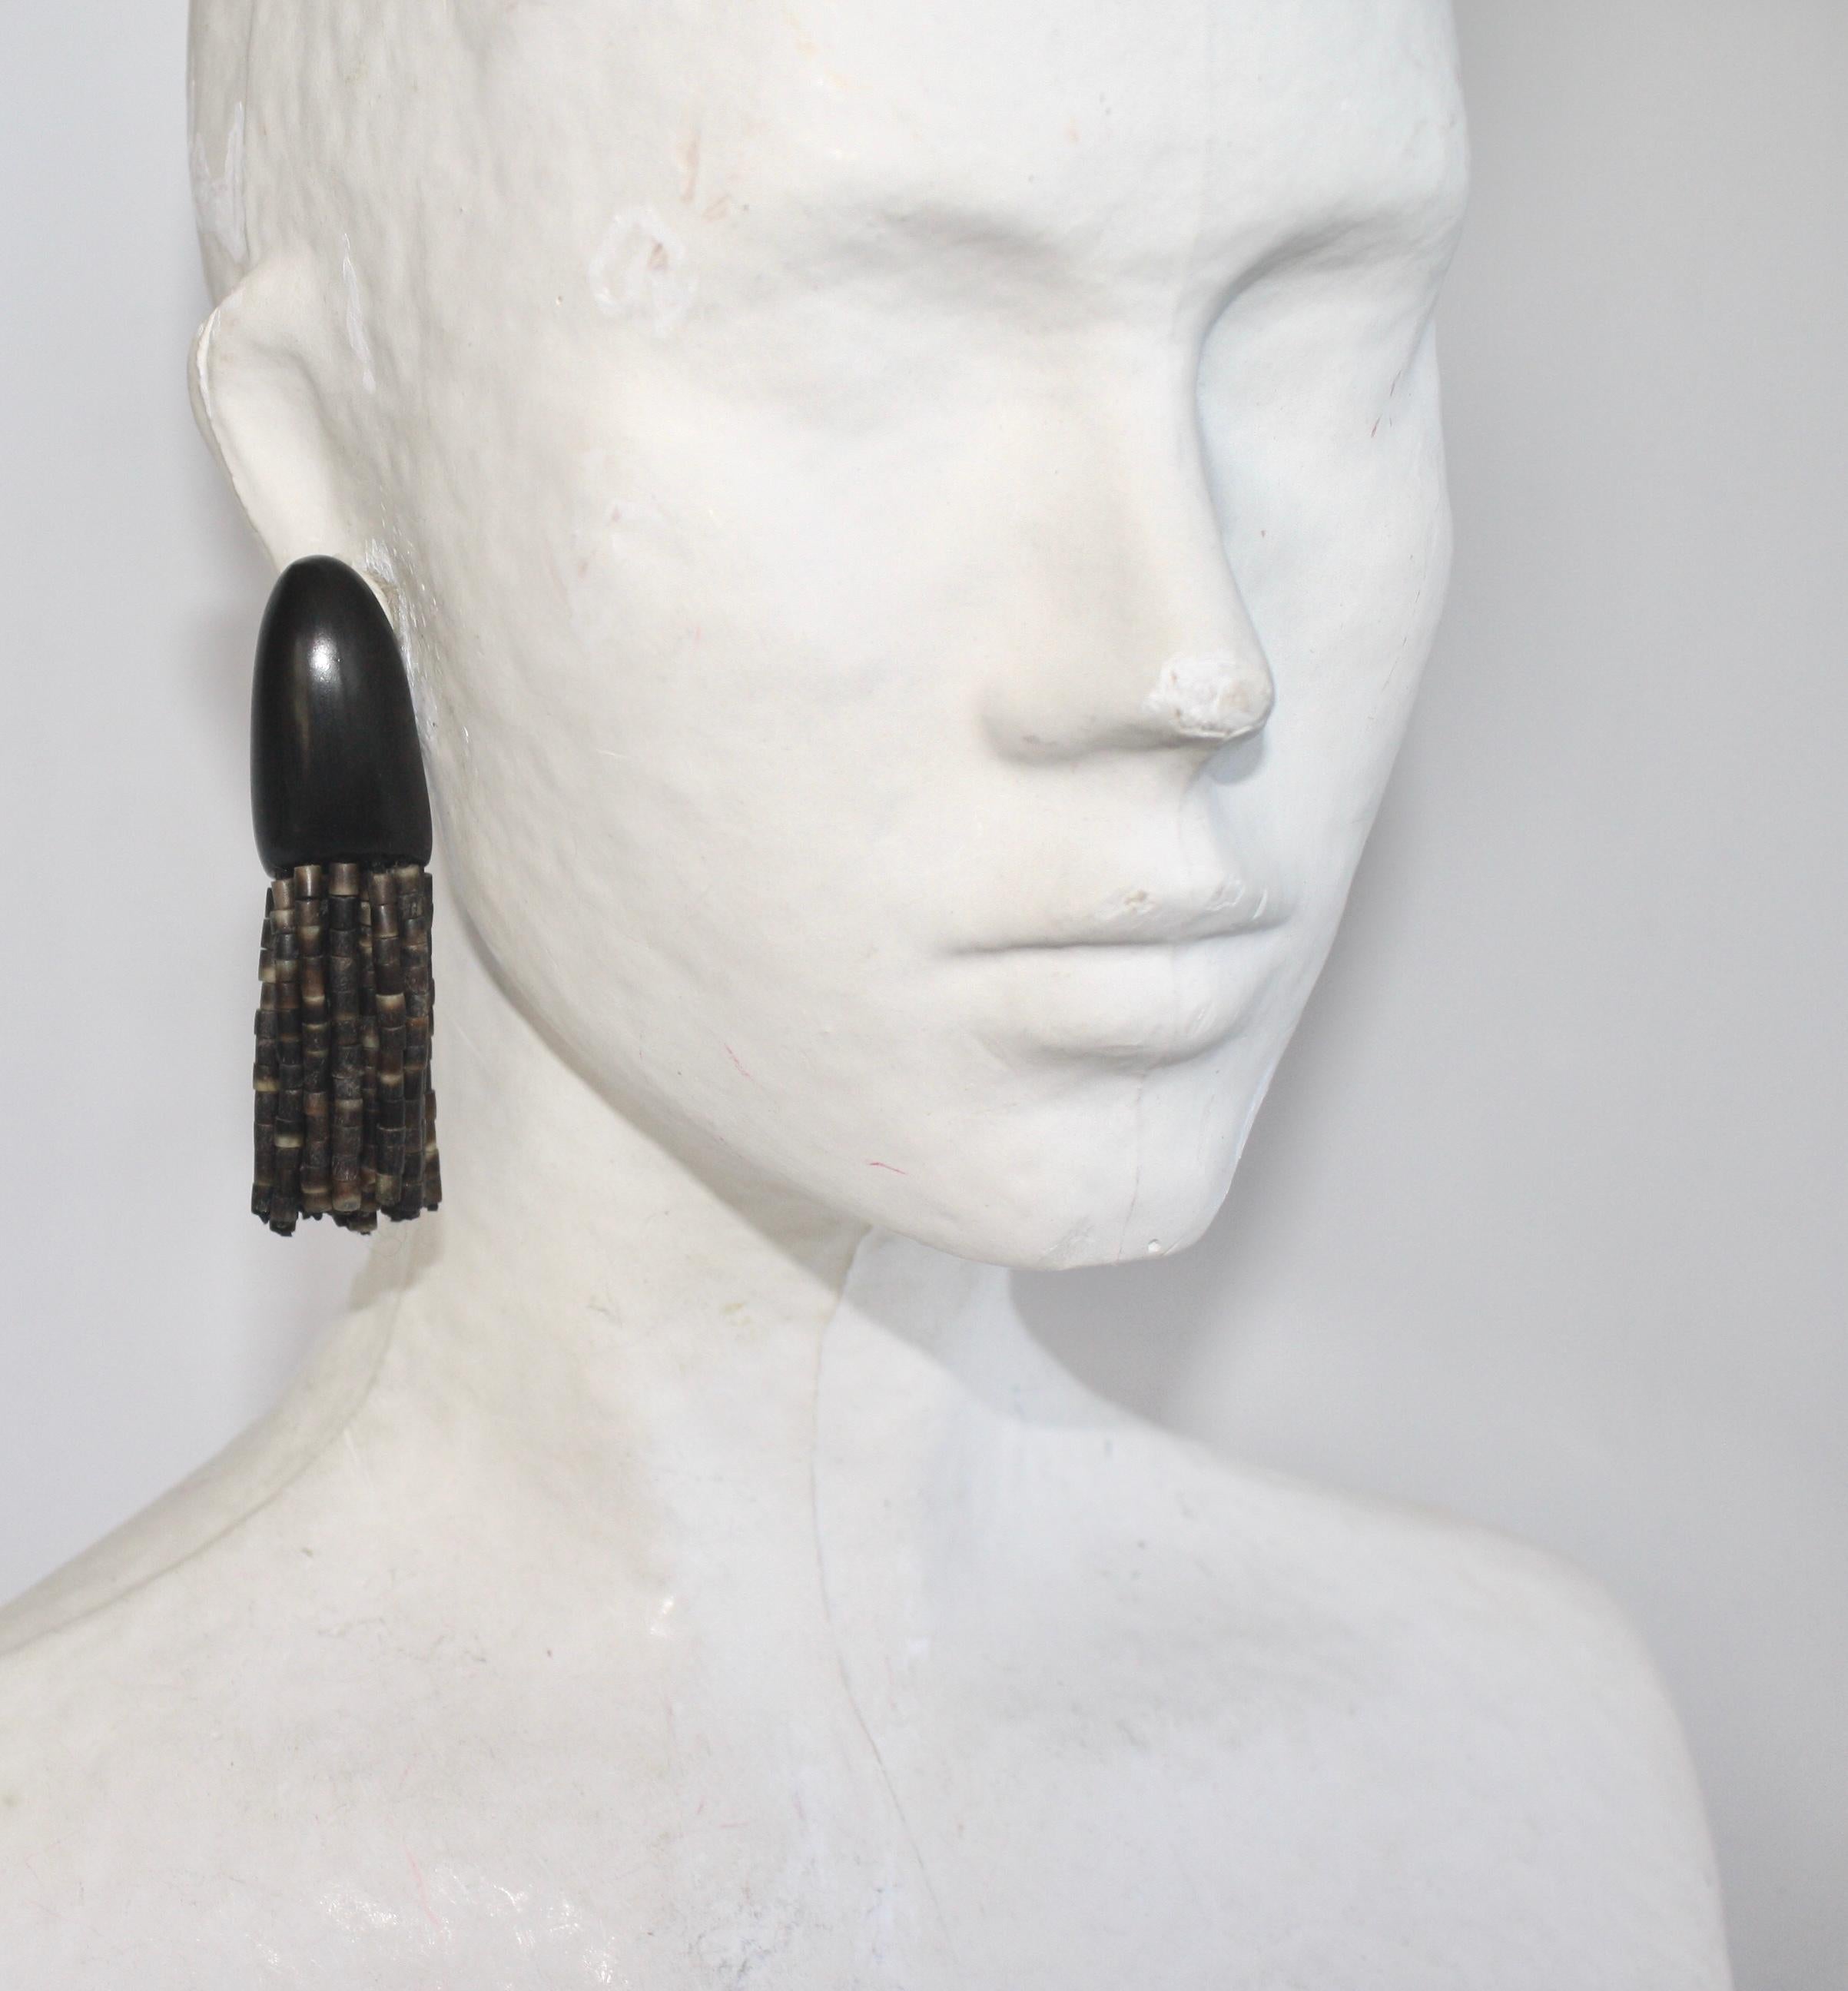 Kamagong wood and horn tassel clip earrings from Monies. 